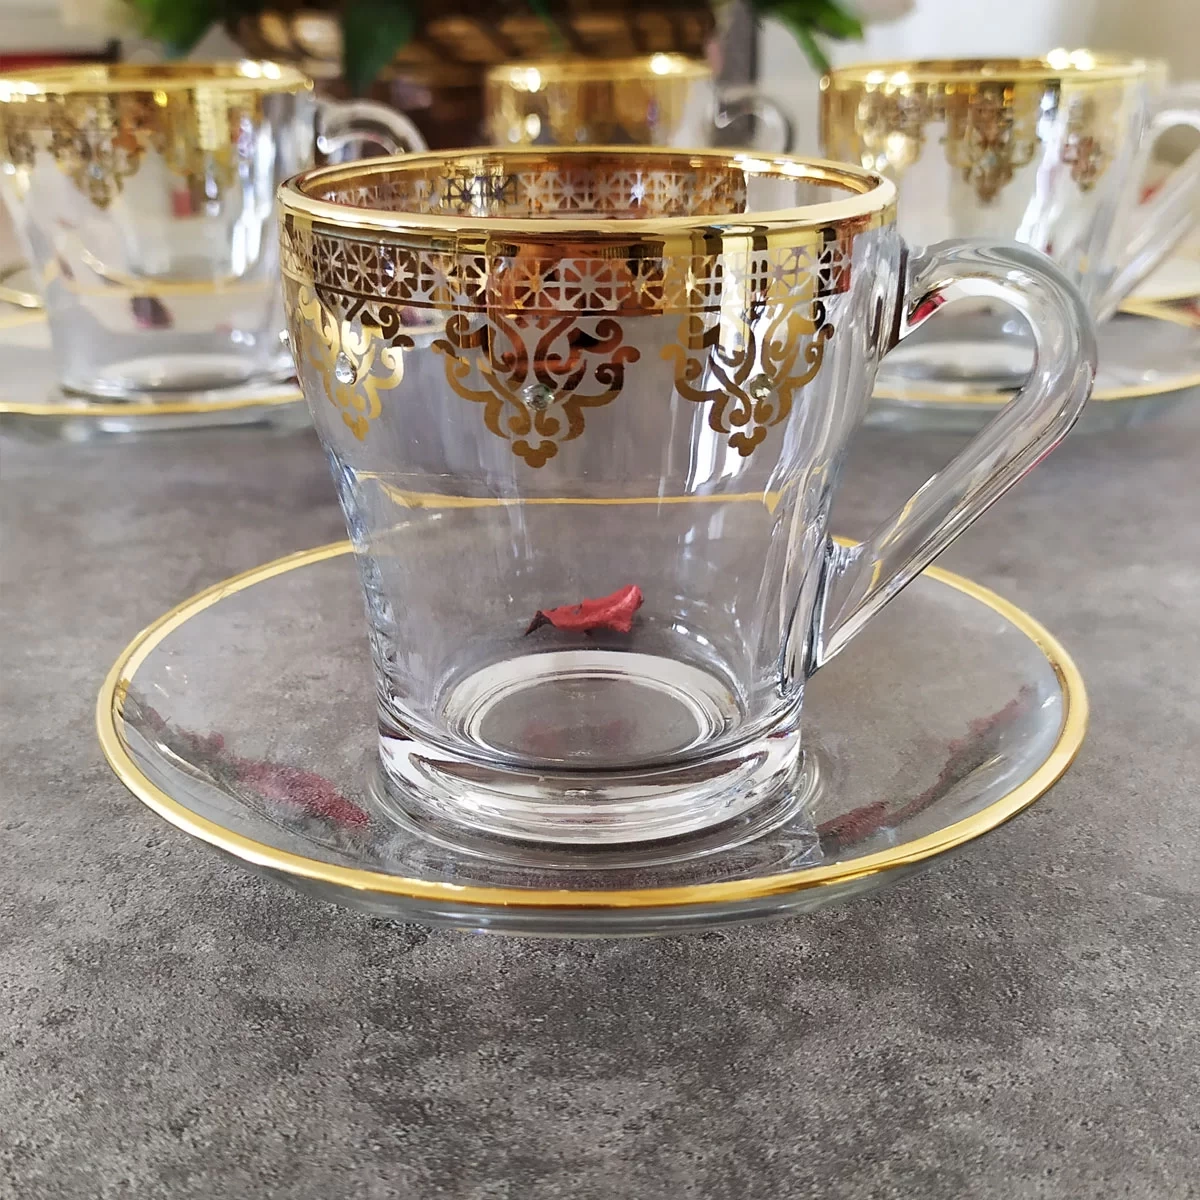 Abka Ottoman Kulplu Çay ve Nescafe Fincan Takımı- 6 Kişilik